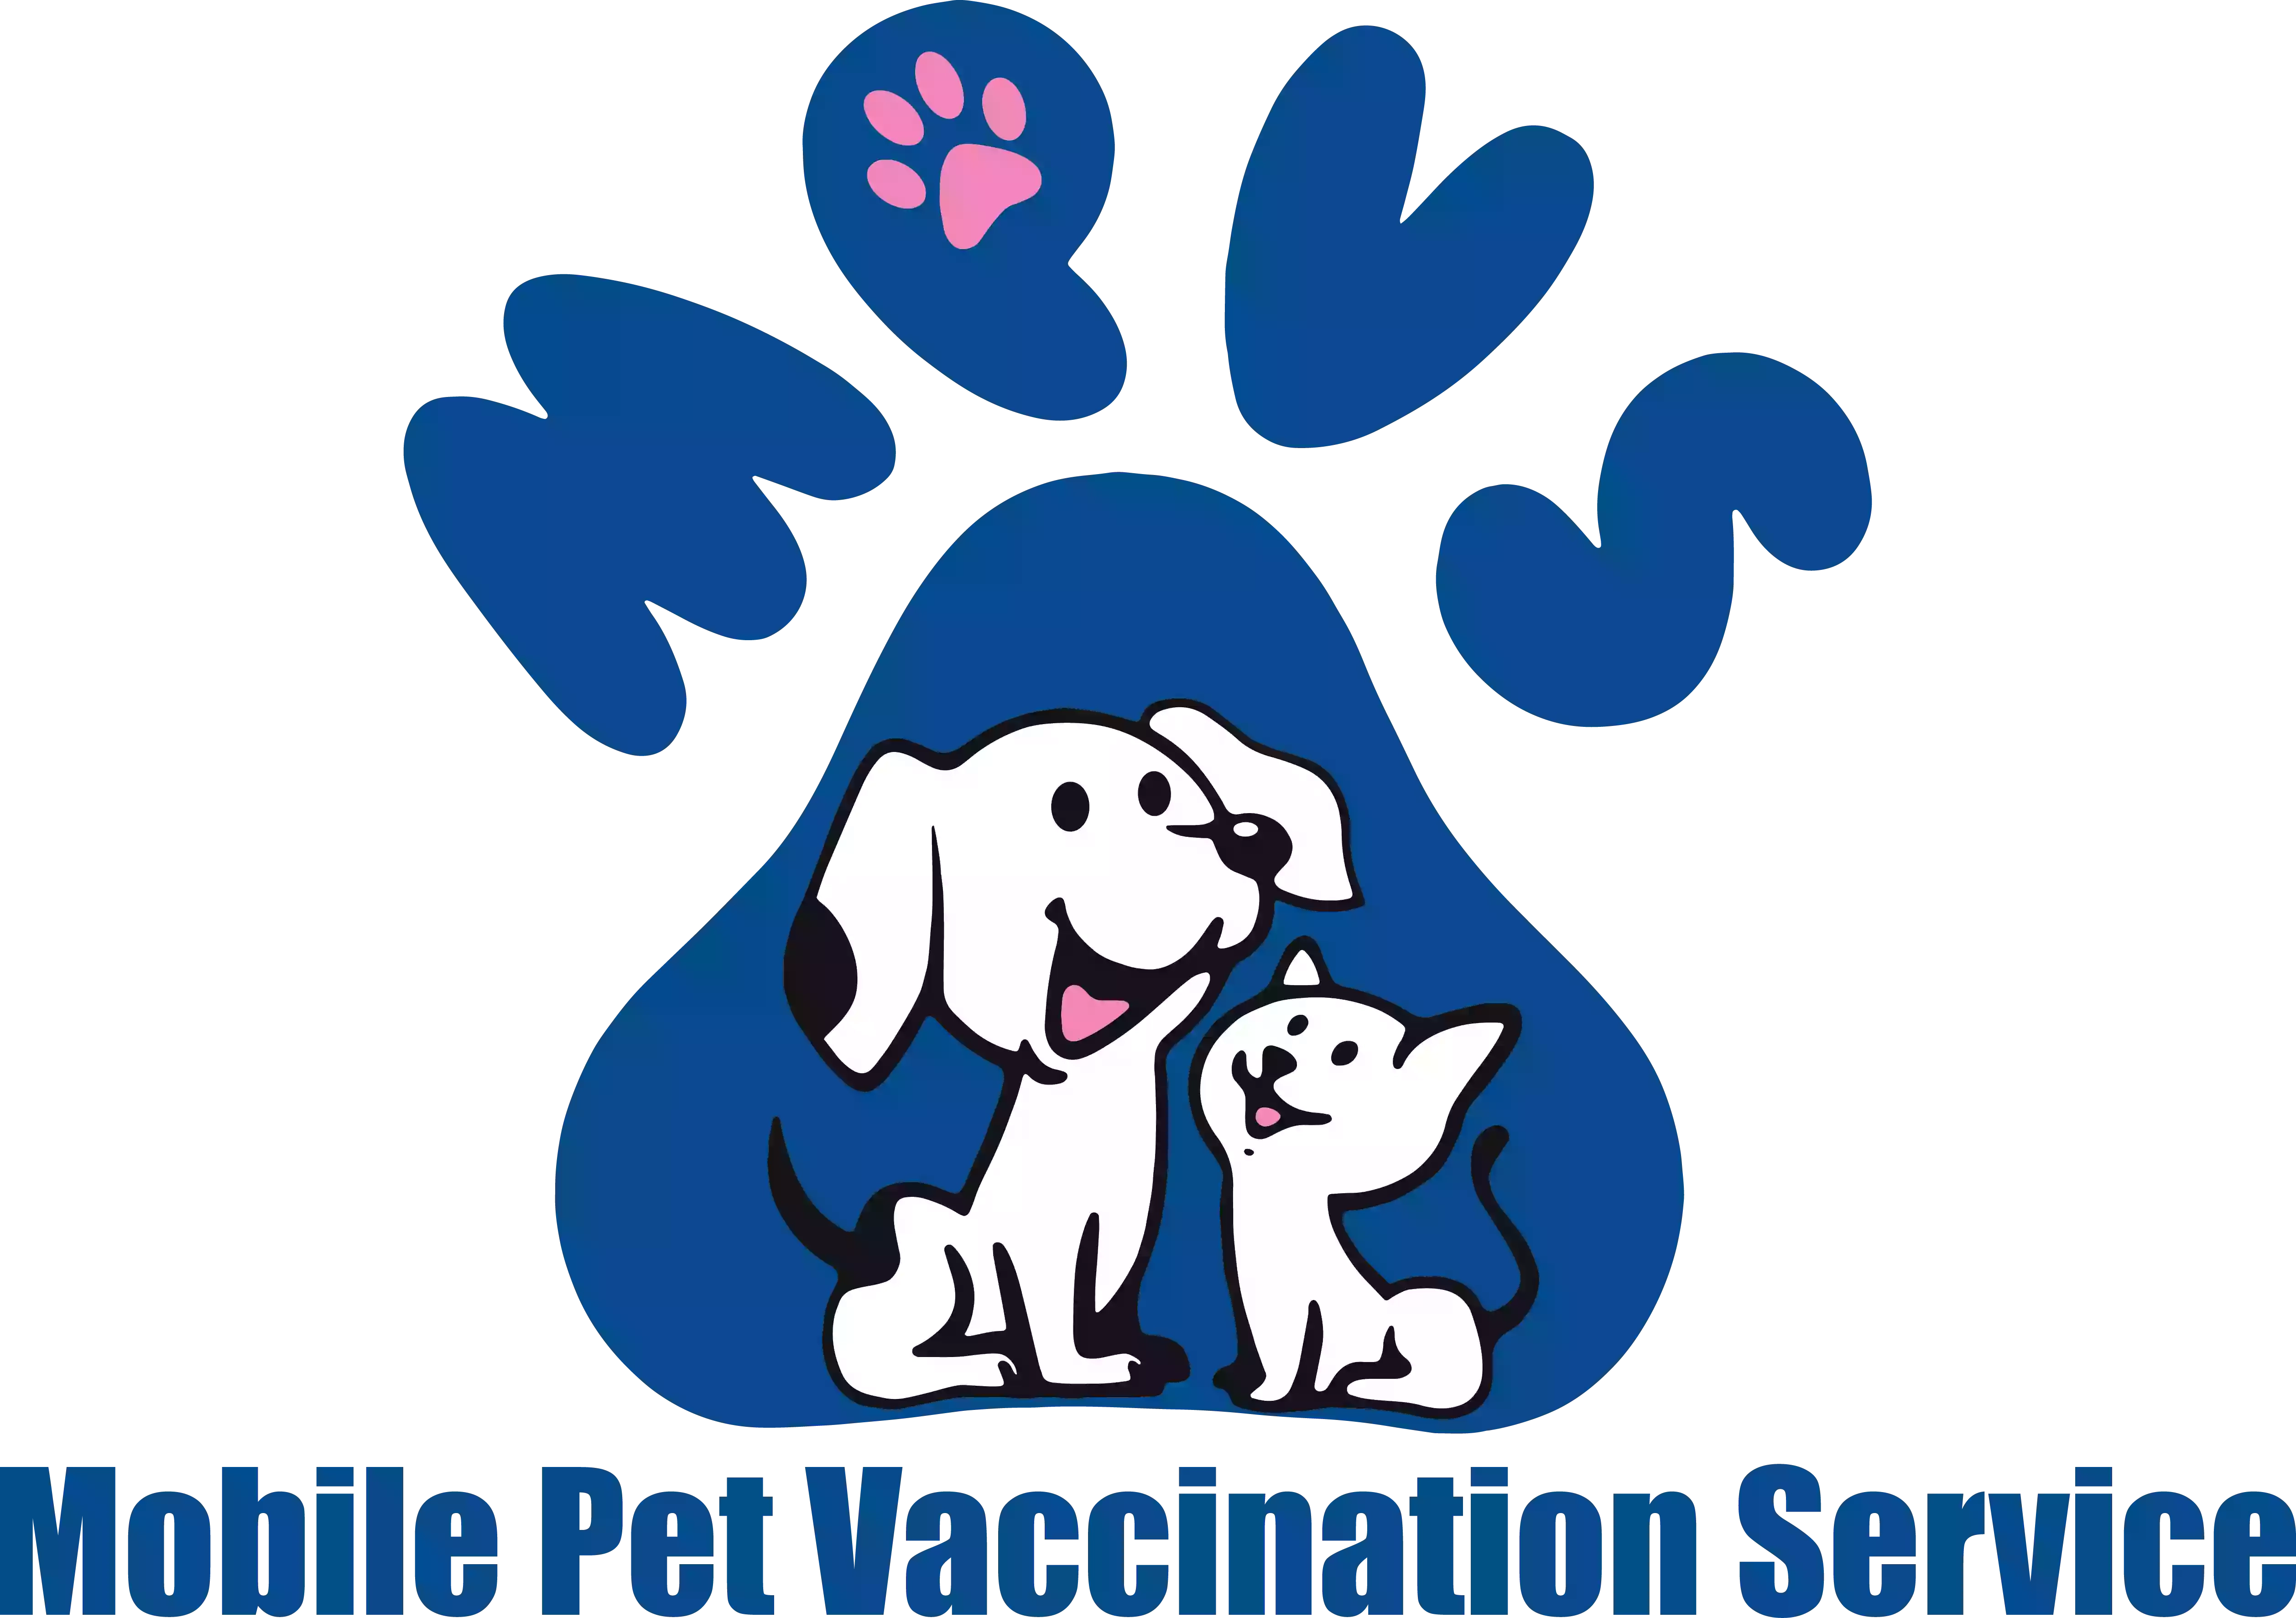 Mobile Pet Vaccination Service Ltd.